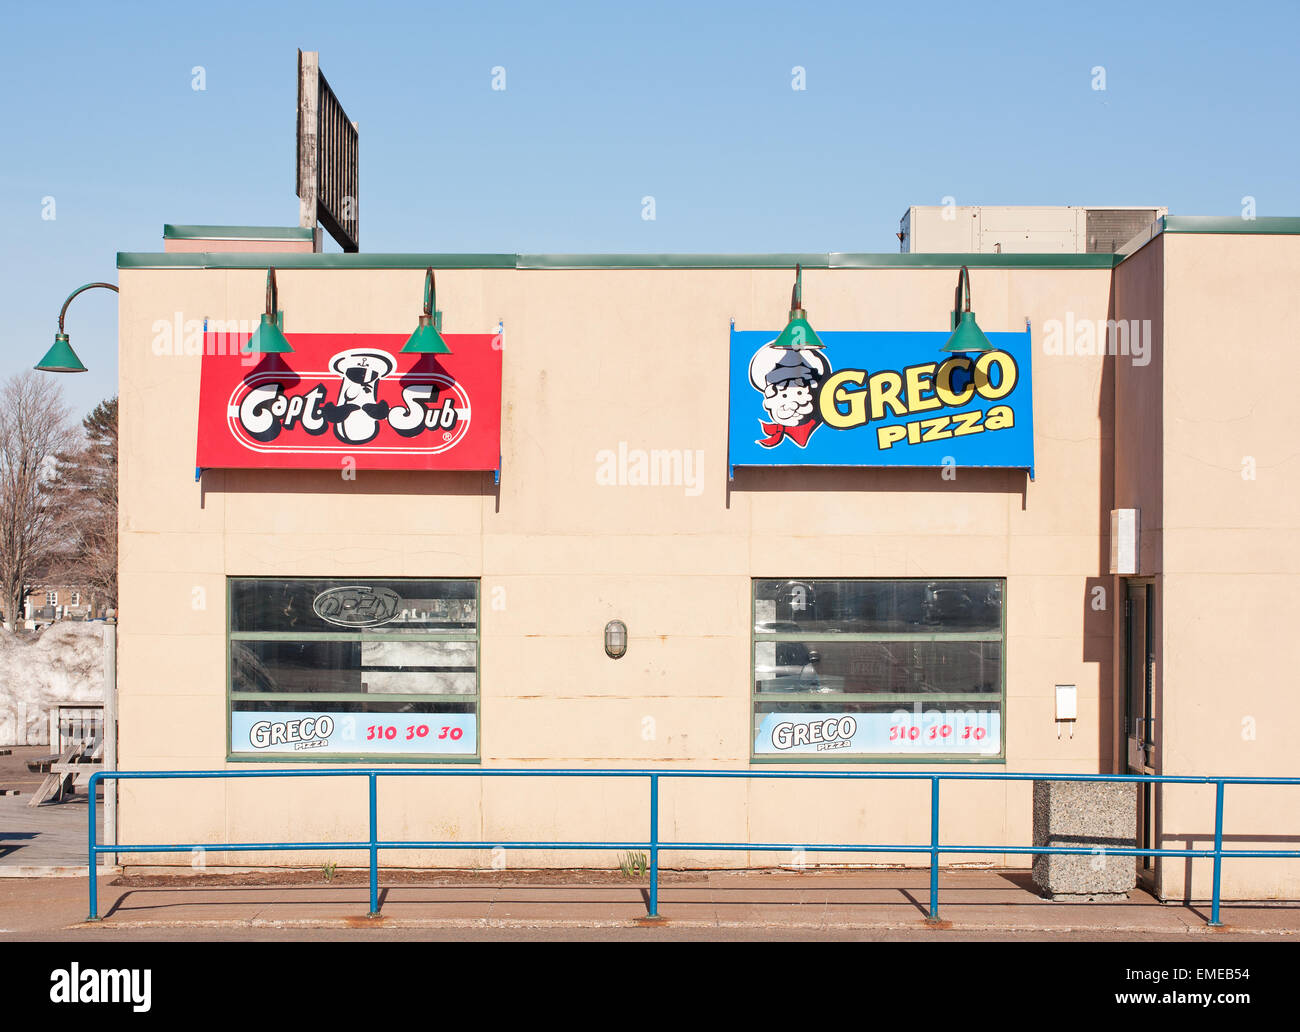 TRURO, Kanada - 20. April 2015: Greco Pizza ist eine kanadische Kette von Restaurants, Pizza und Pizza-Lieferservice spezialisiert. Stockfoto